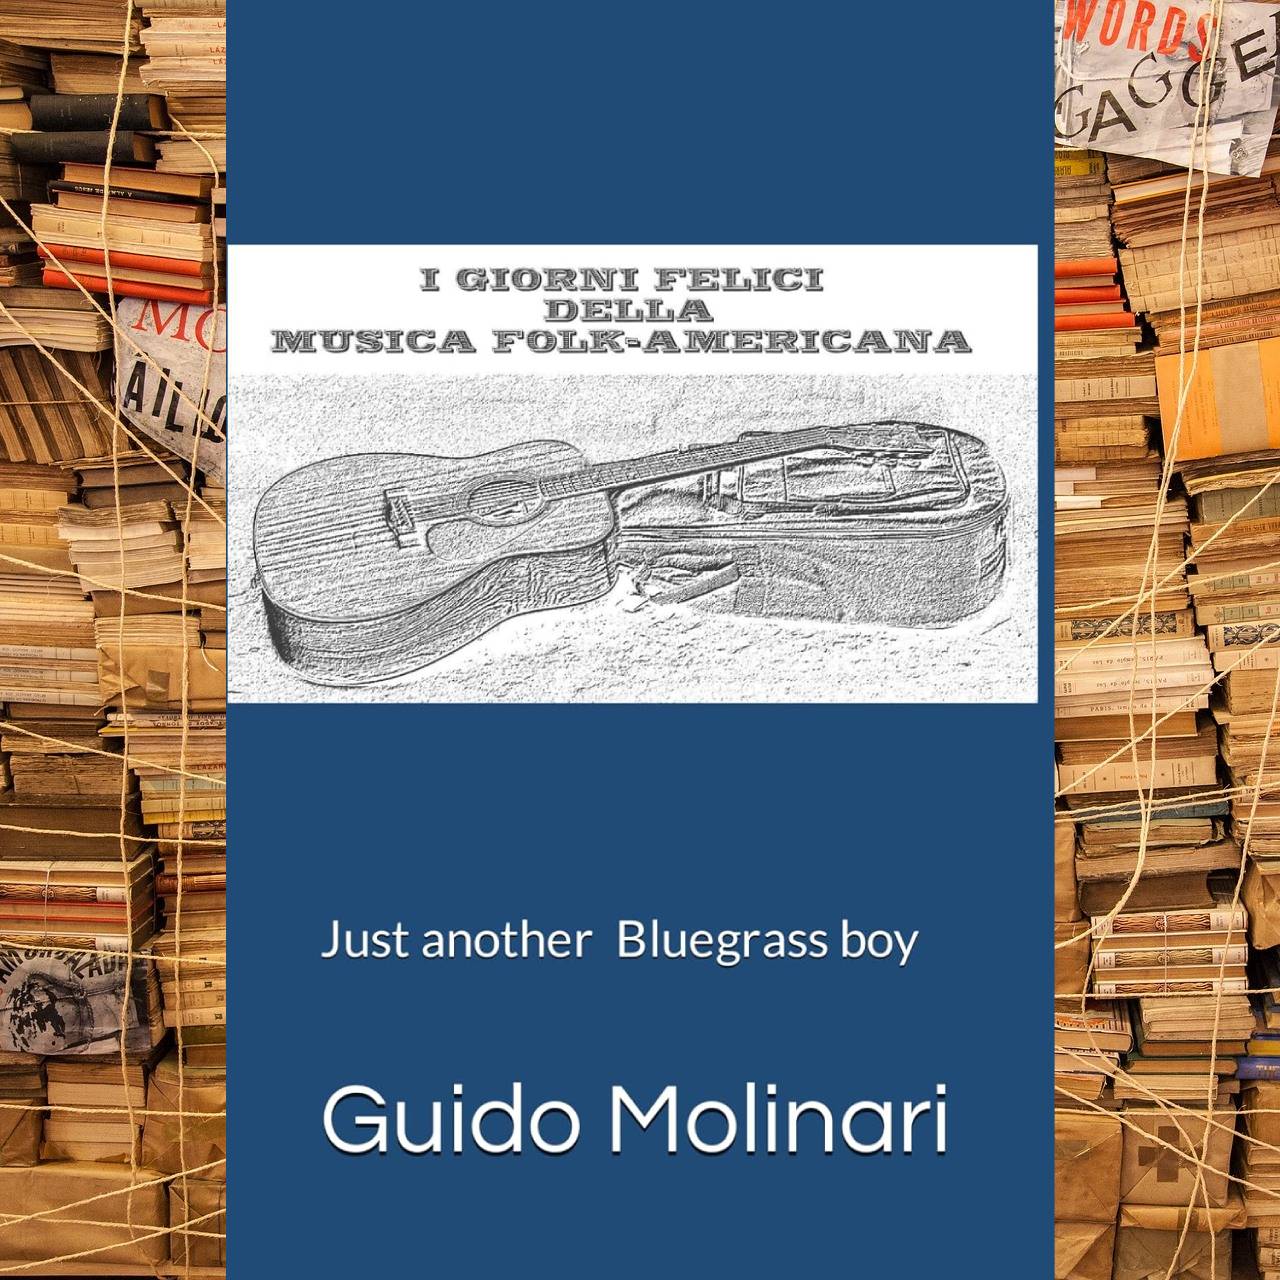 Guido Molinari - I giorni felici della musica folk americana cover book